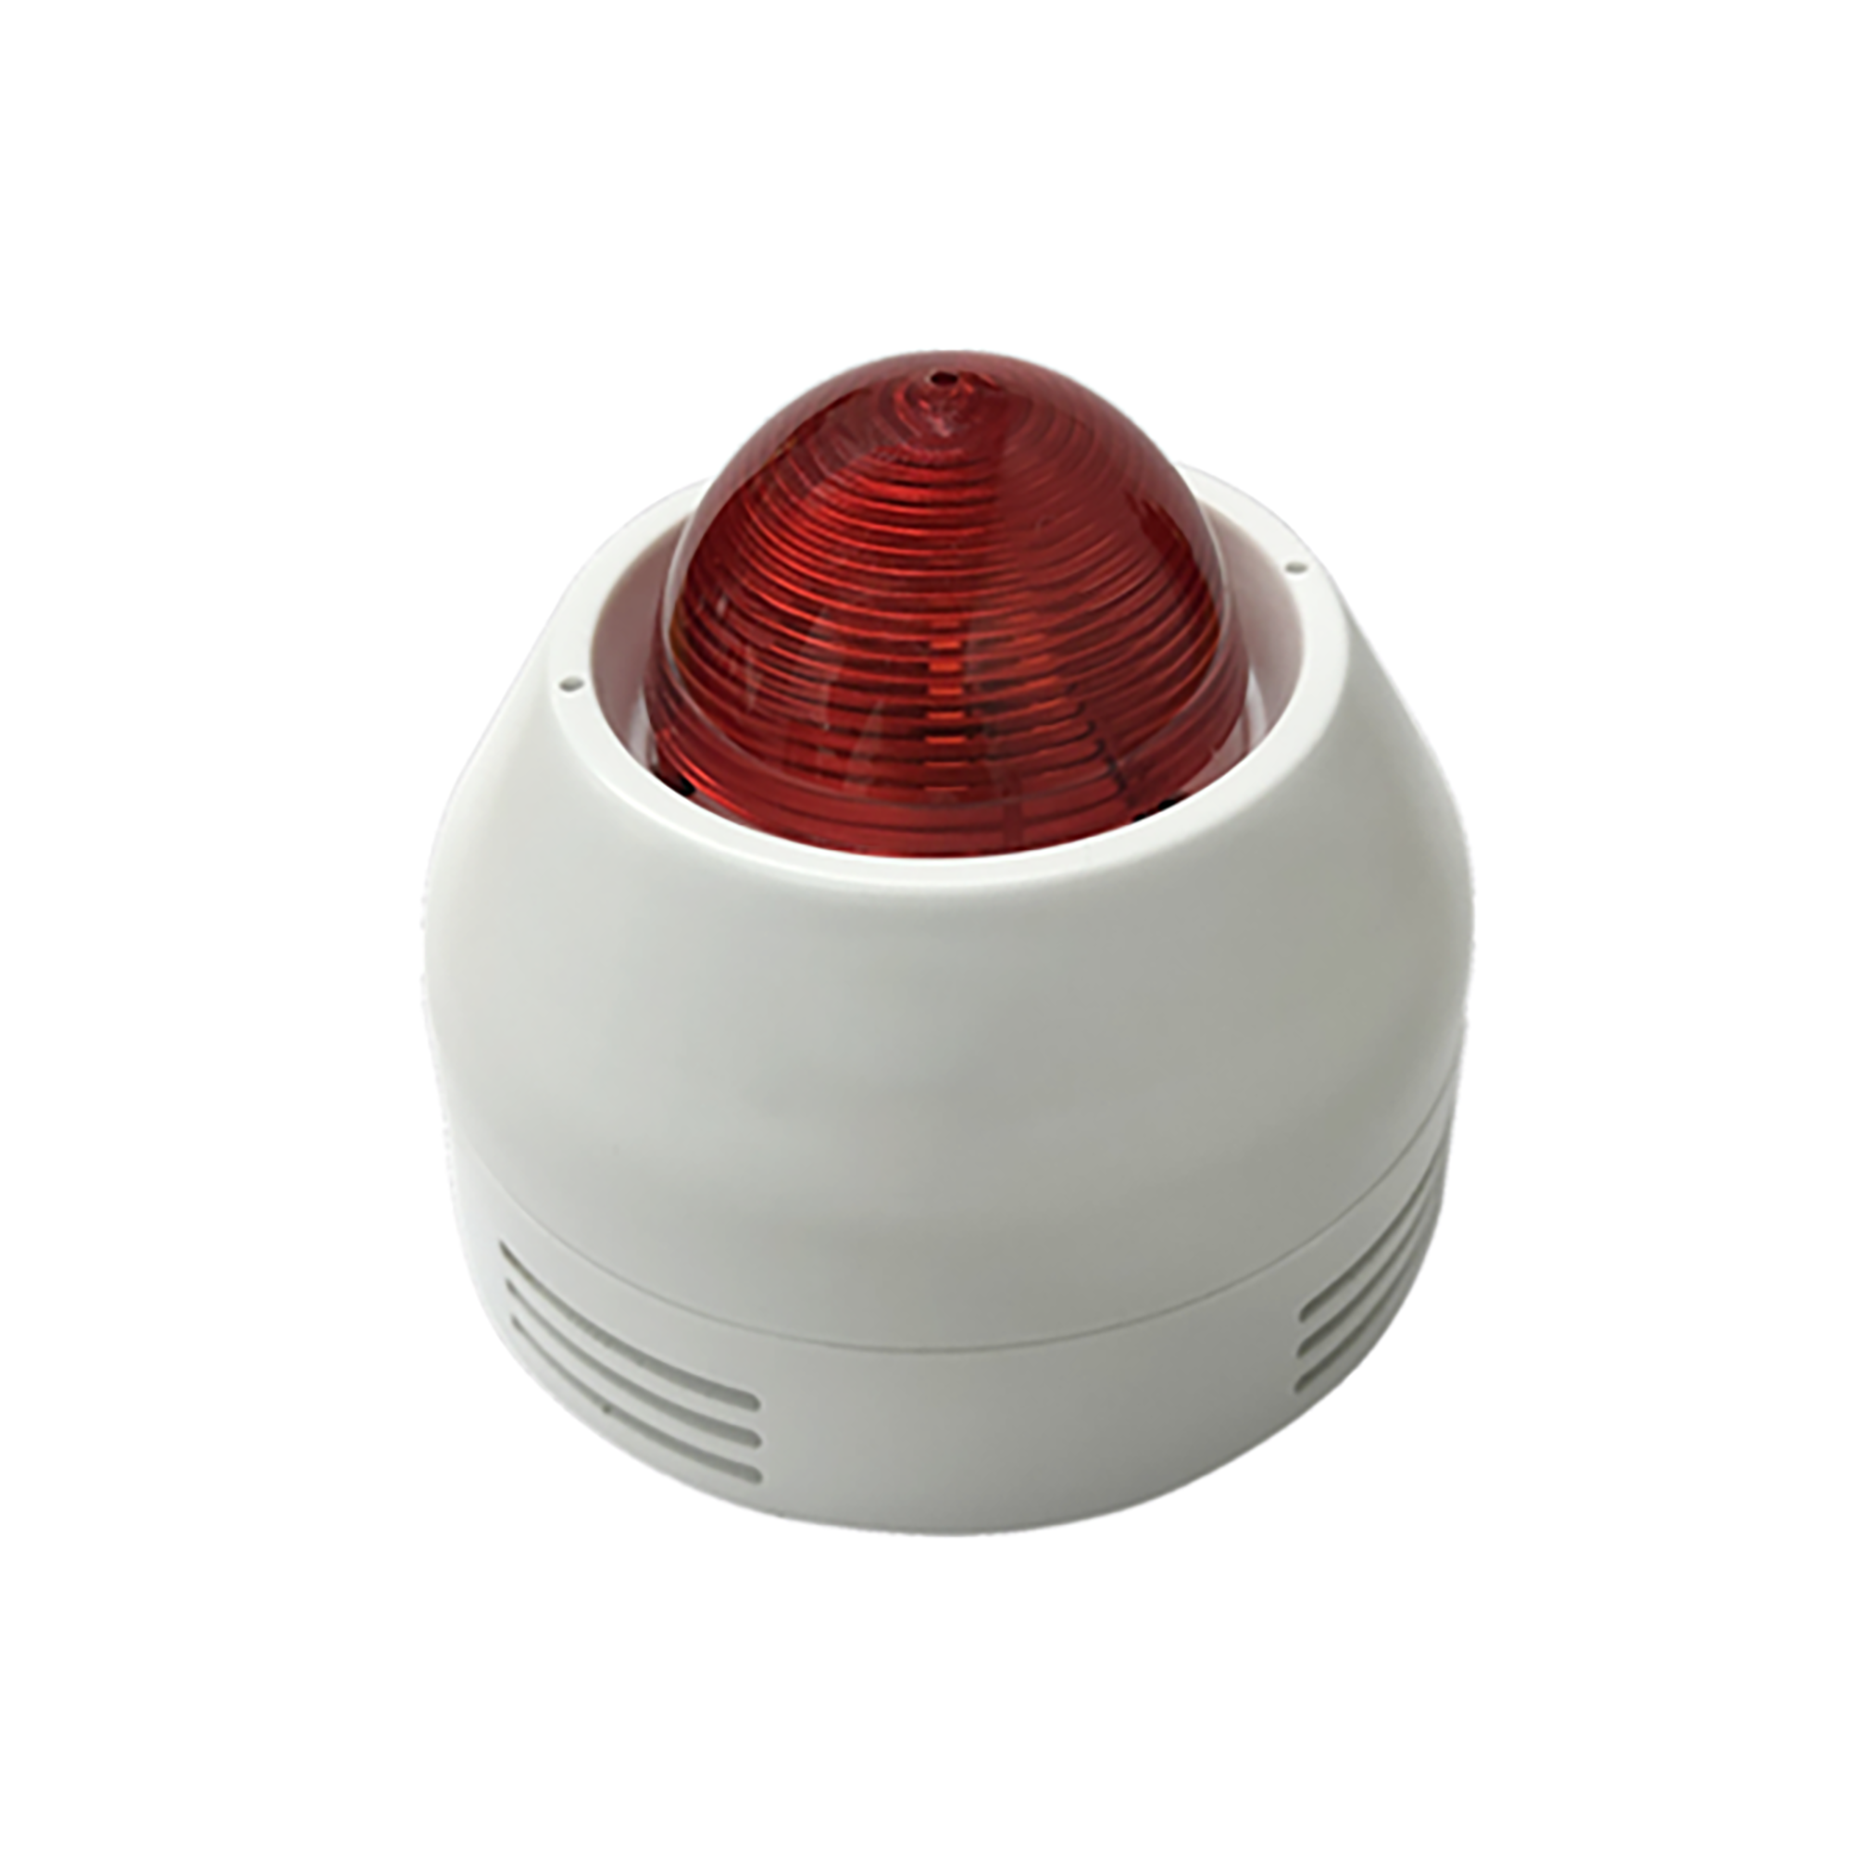 Беспроводная звуковая и световая сигнализация JBF-4372R: повысьте безопасность дома с помощью интеллектуальных подключений